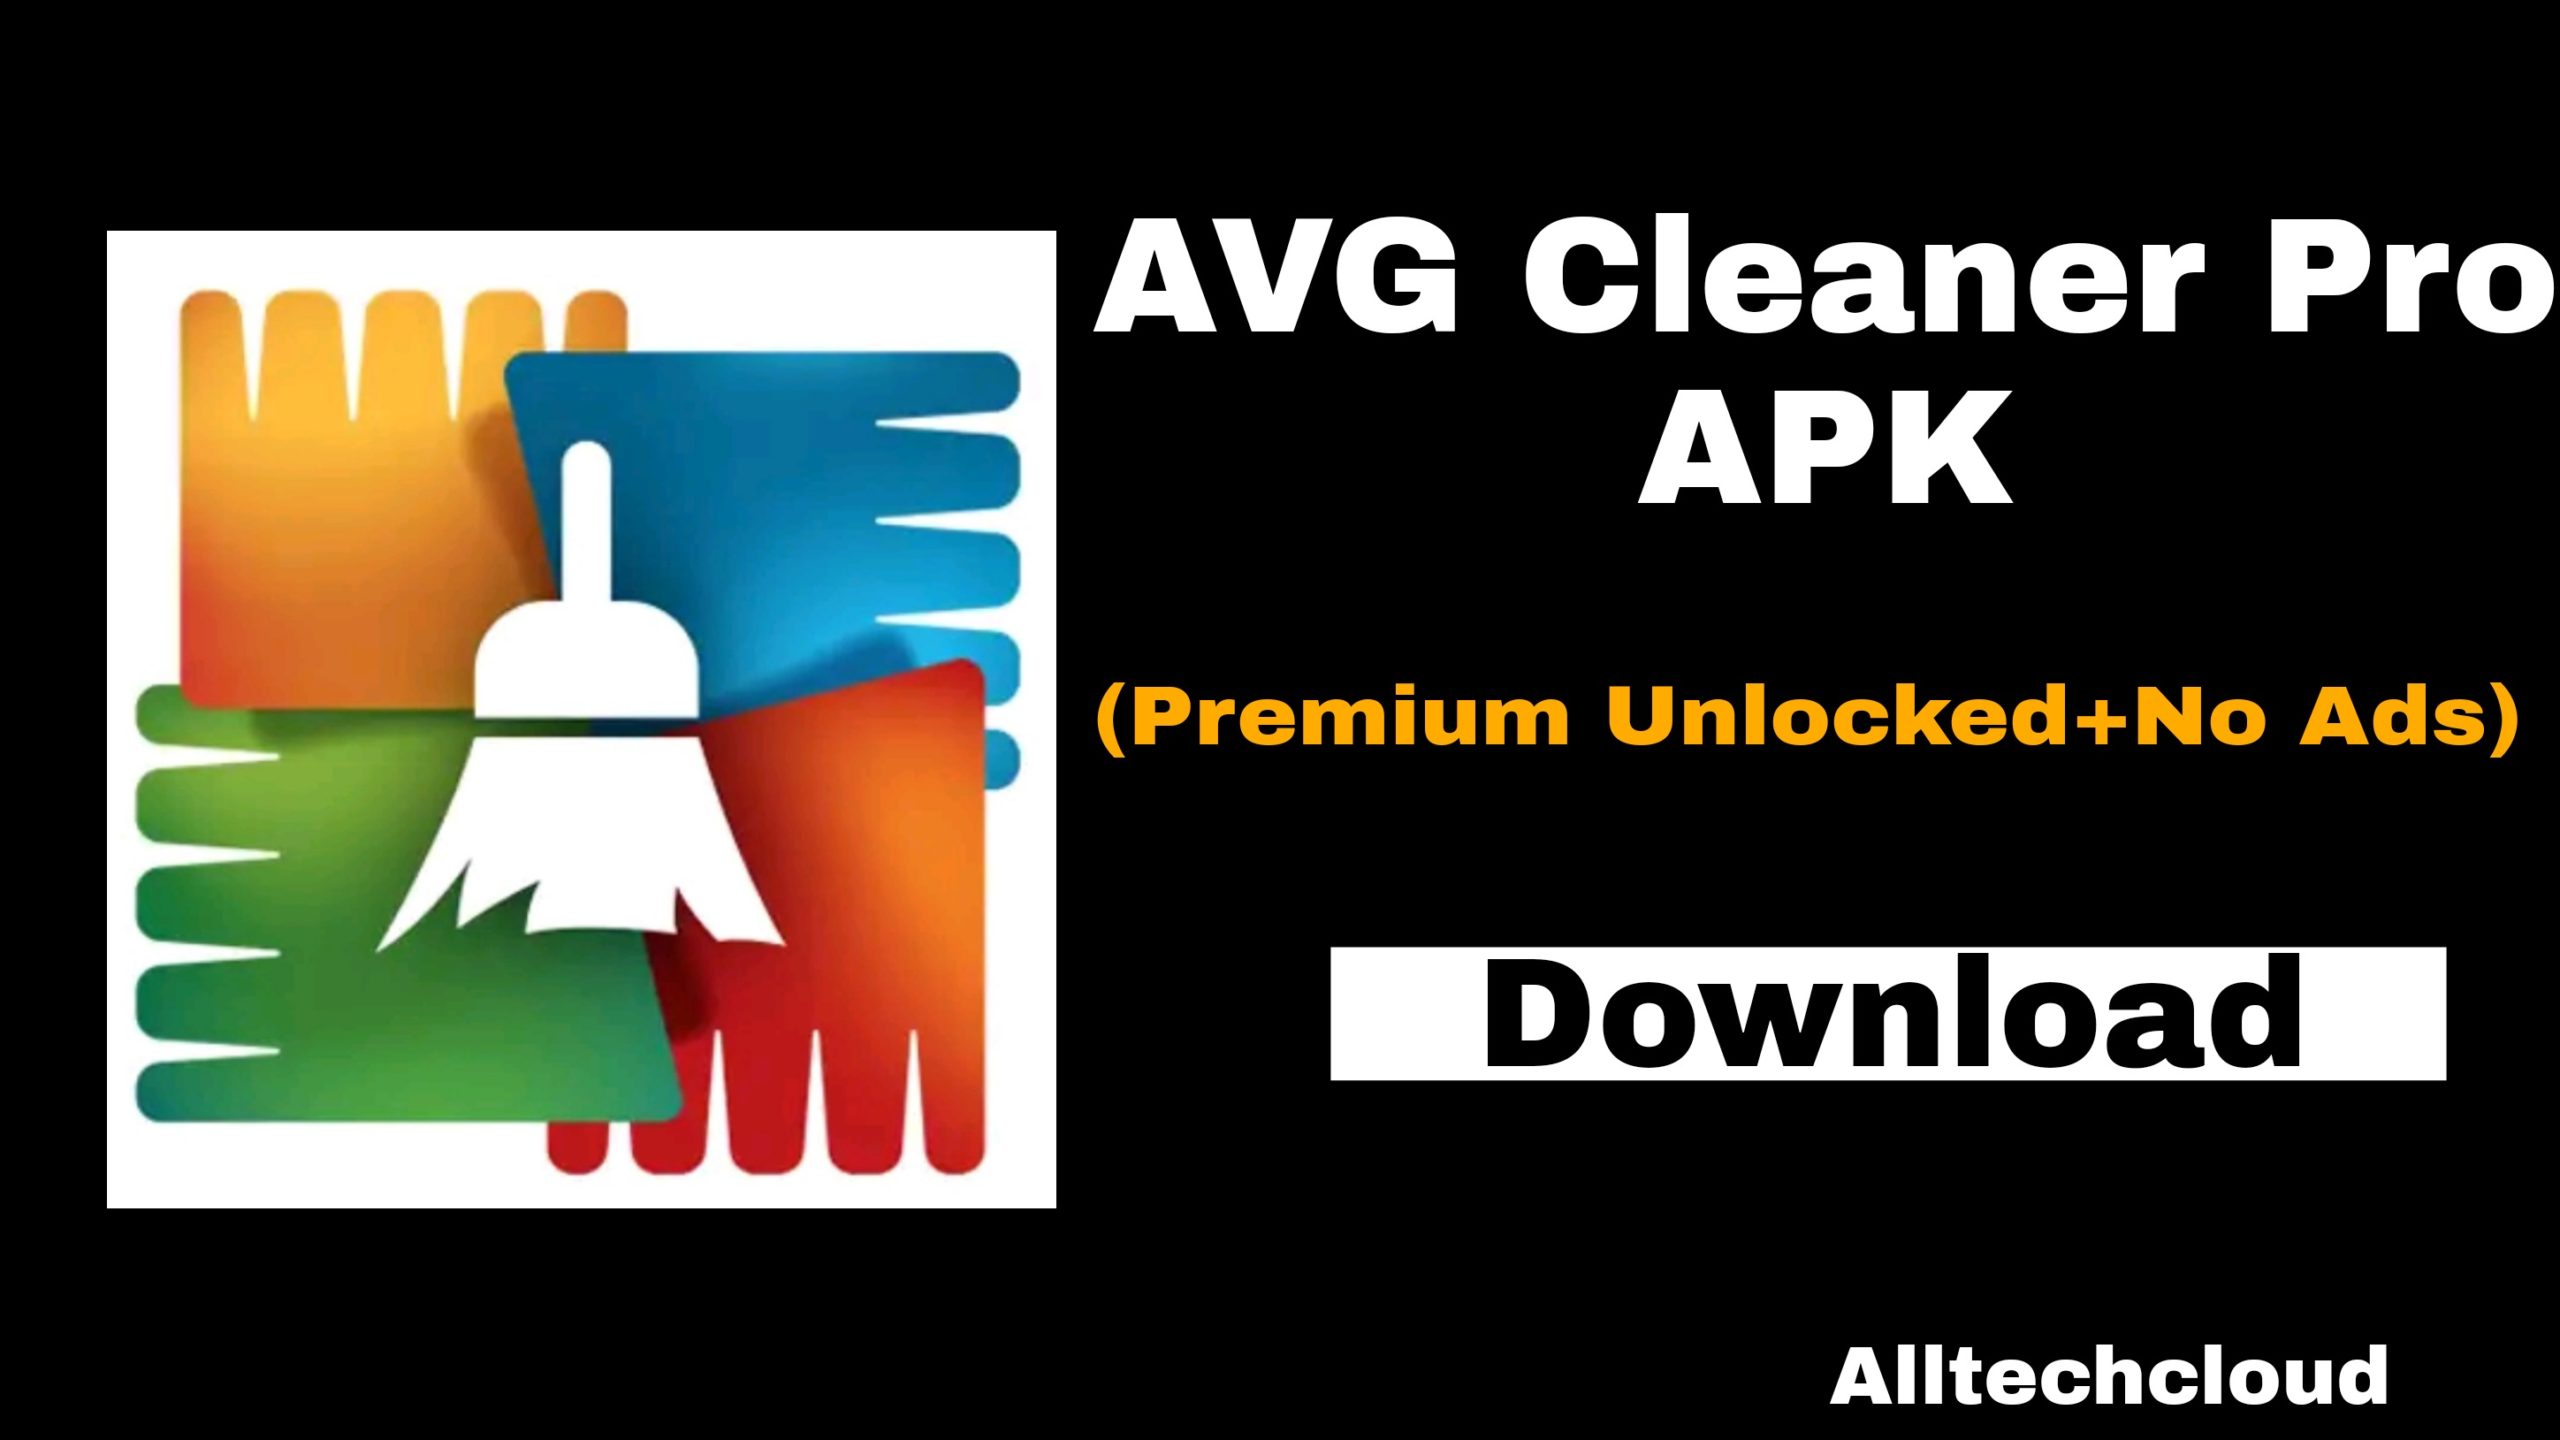 avg cleaner pro apk 4.4.2